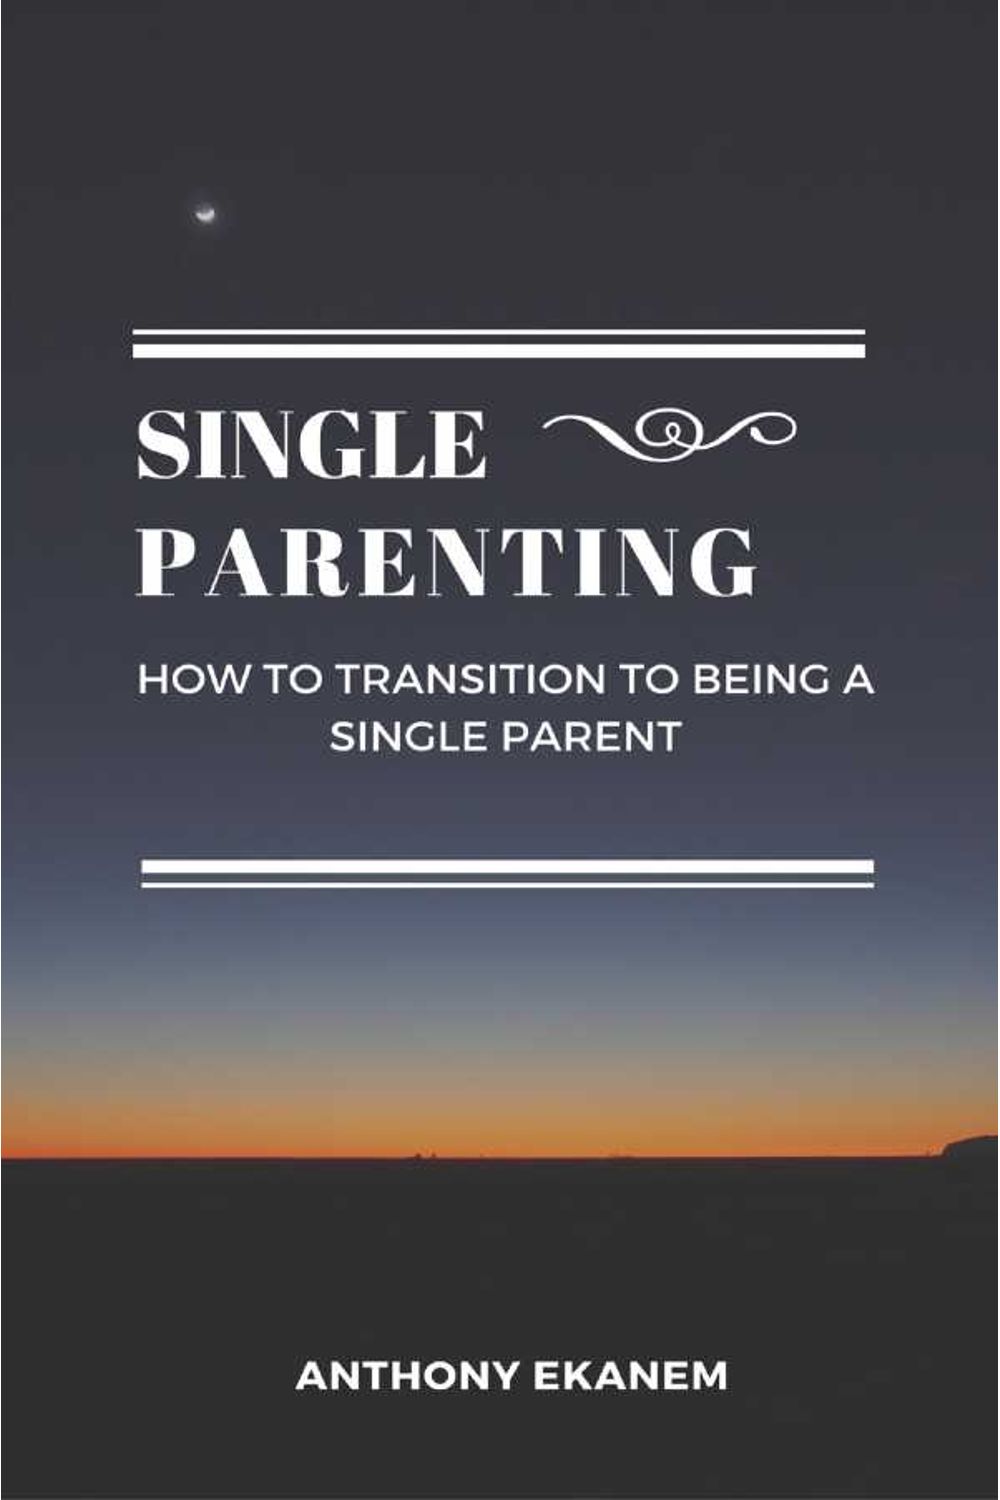 bw-single-parenting-anthony-ekanem-9783961120291